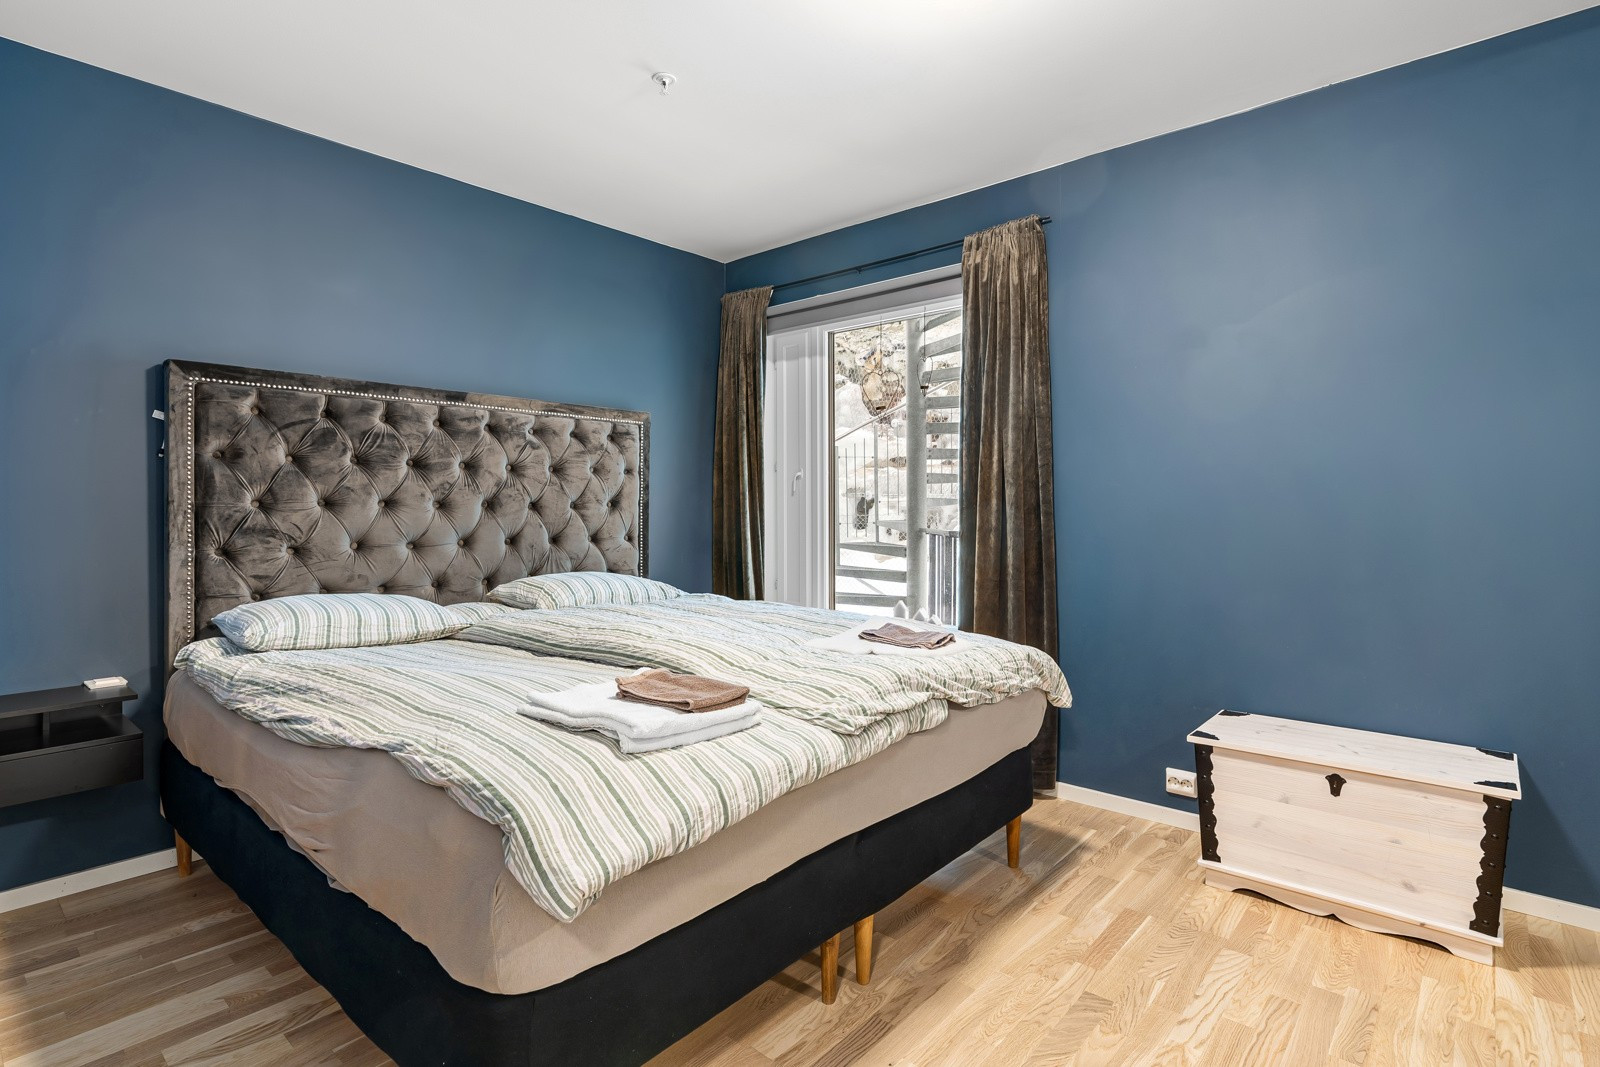 På soverommet har du plass til stor seng, tilhørende nattbord og klesoppbevaring.